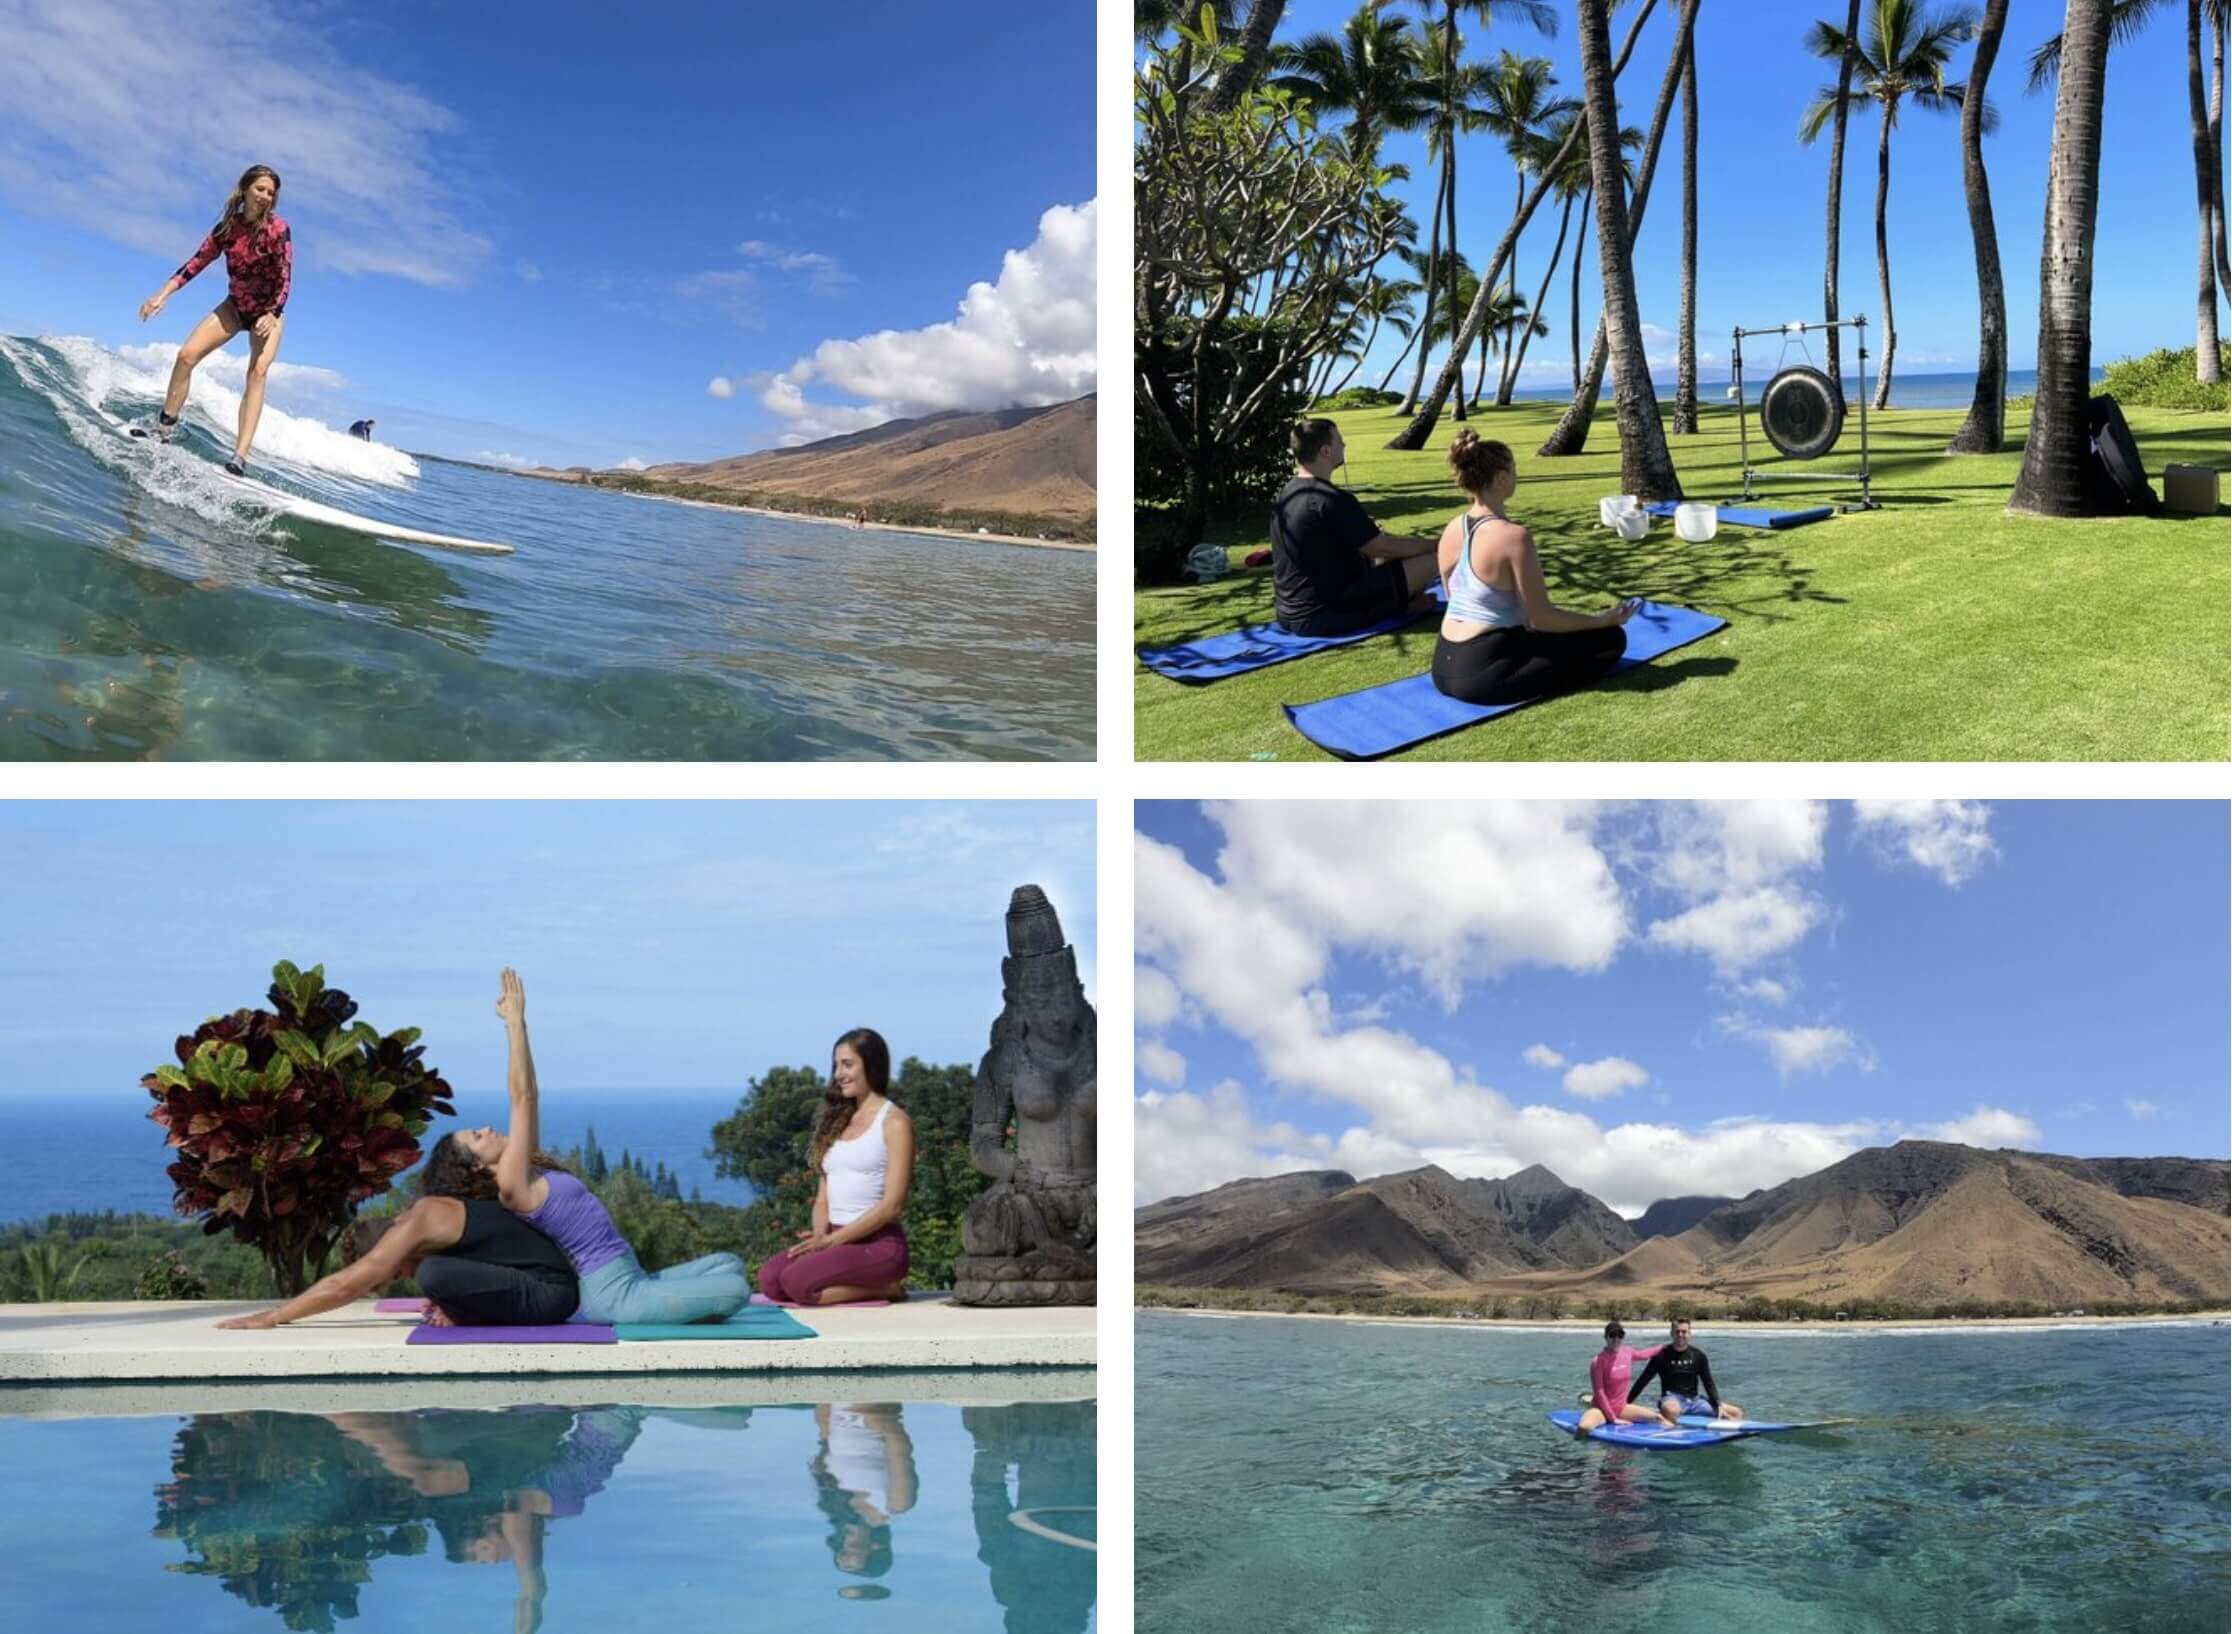 Maui Surf and Yoga Retreats